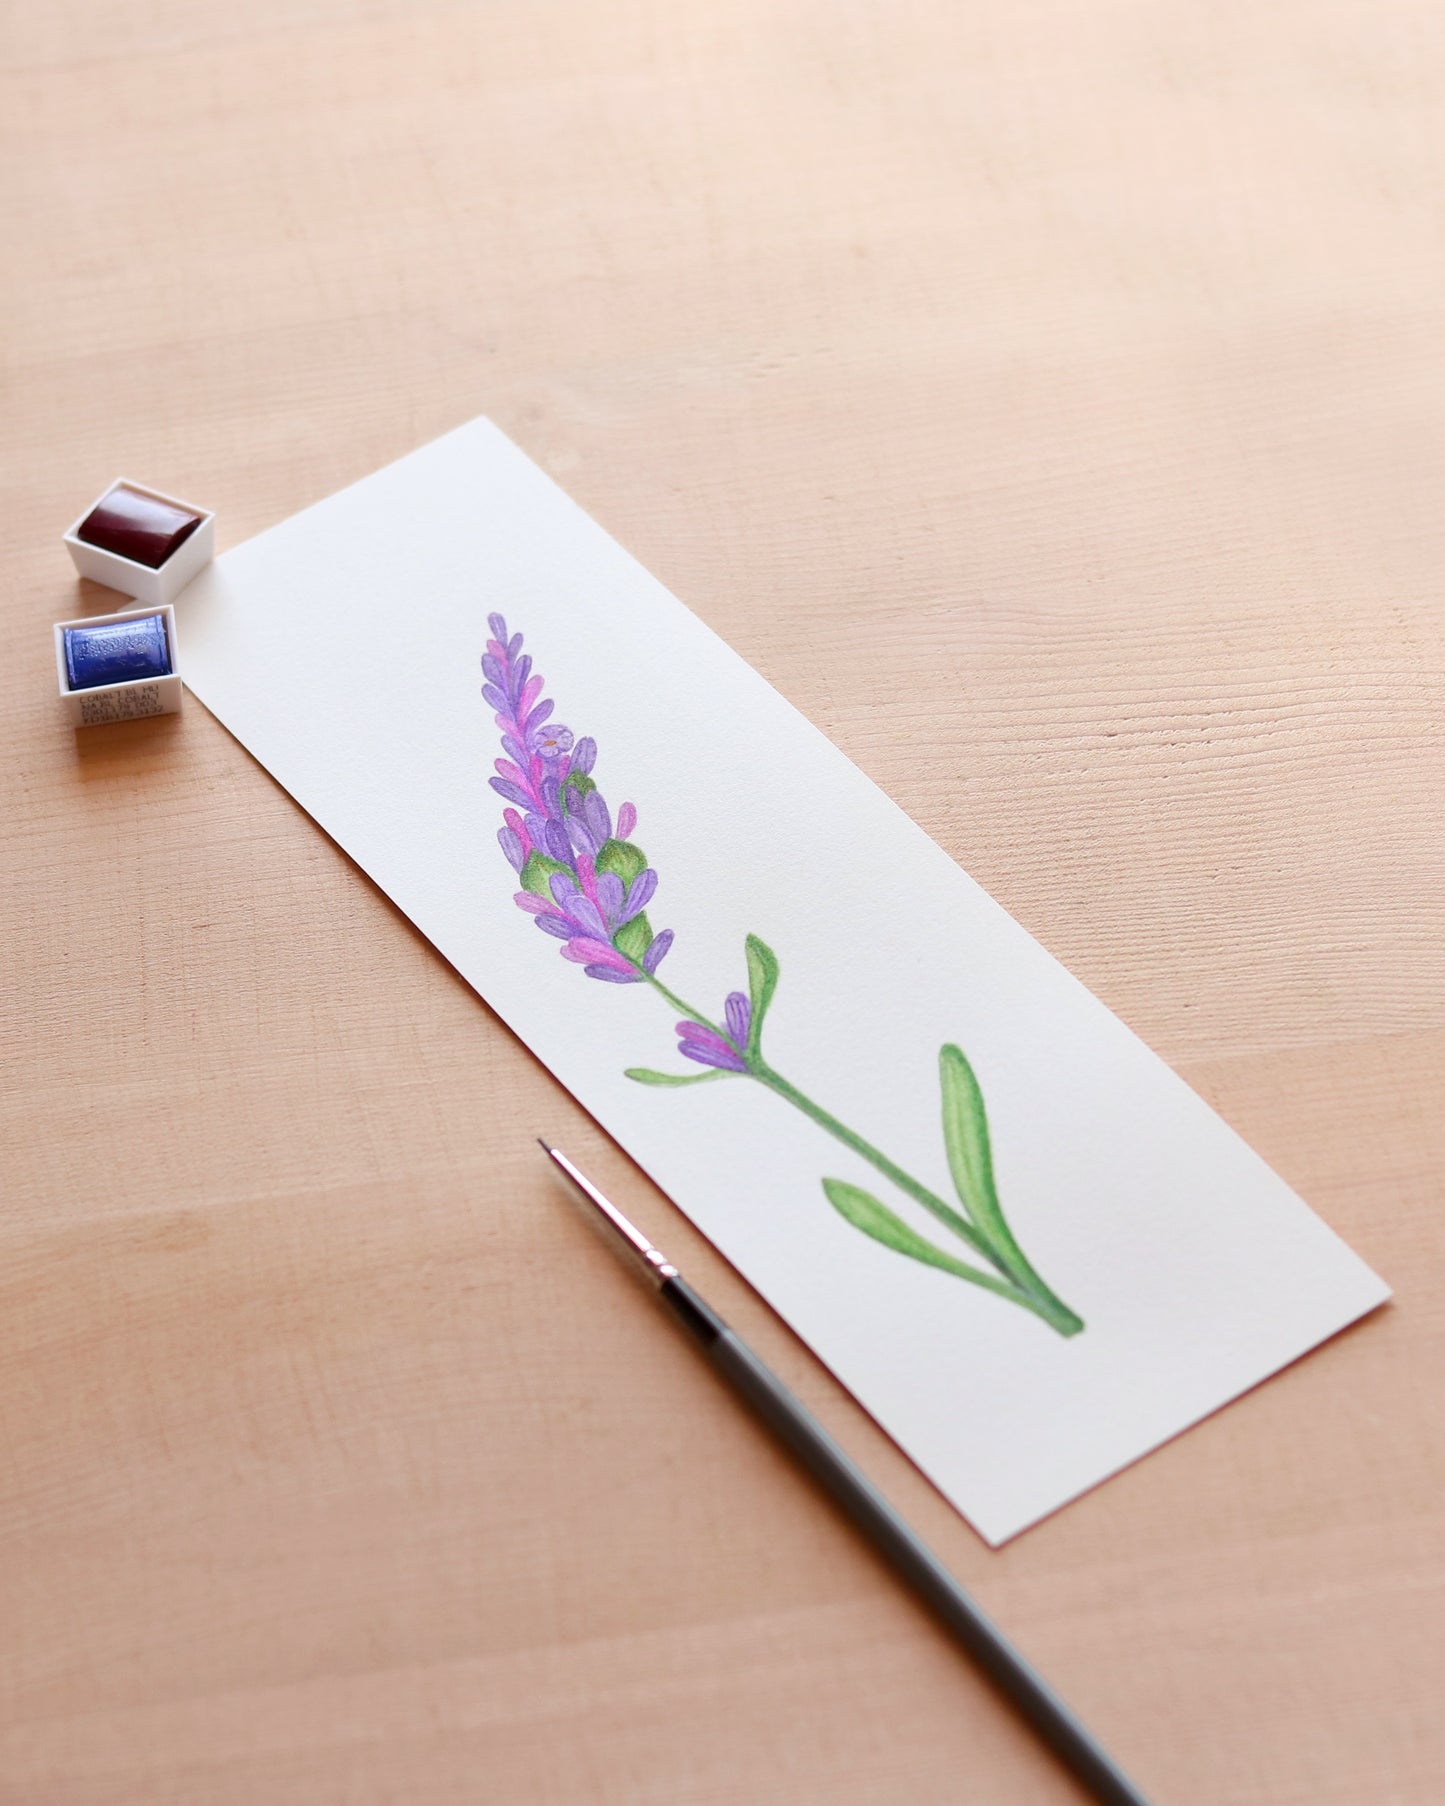 Lavender flower - Original botanical illustration